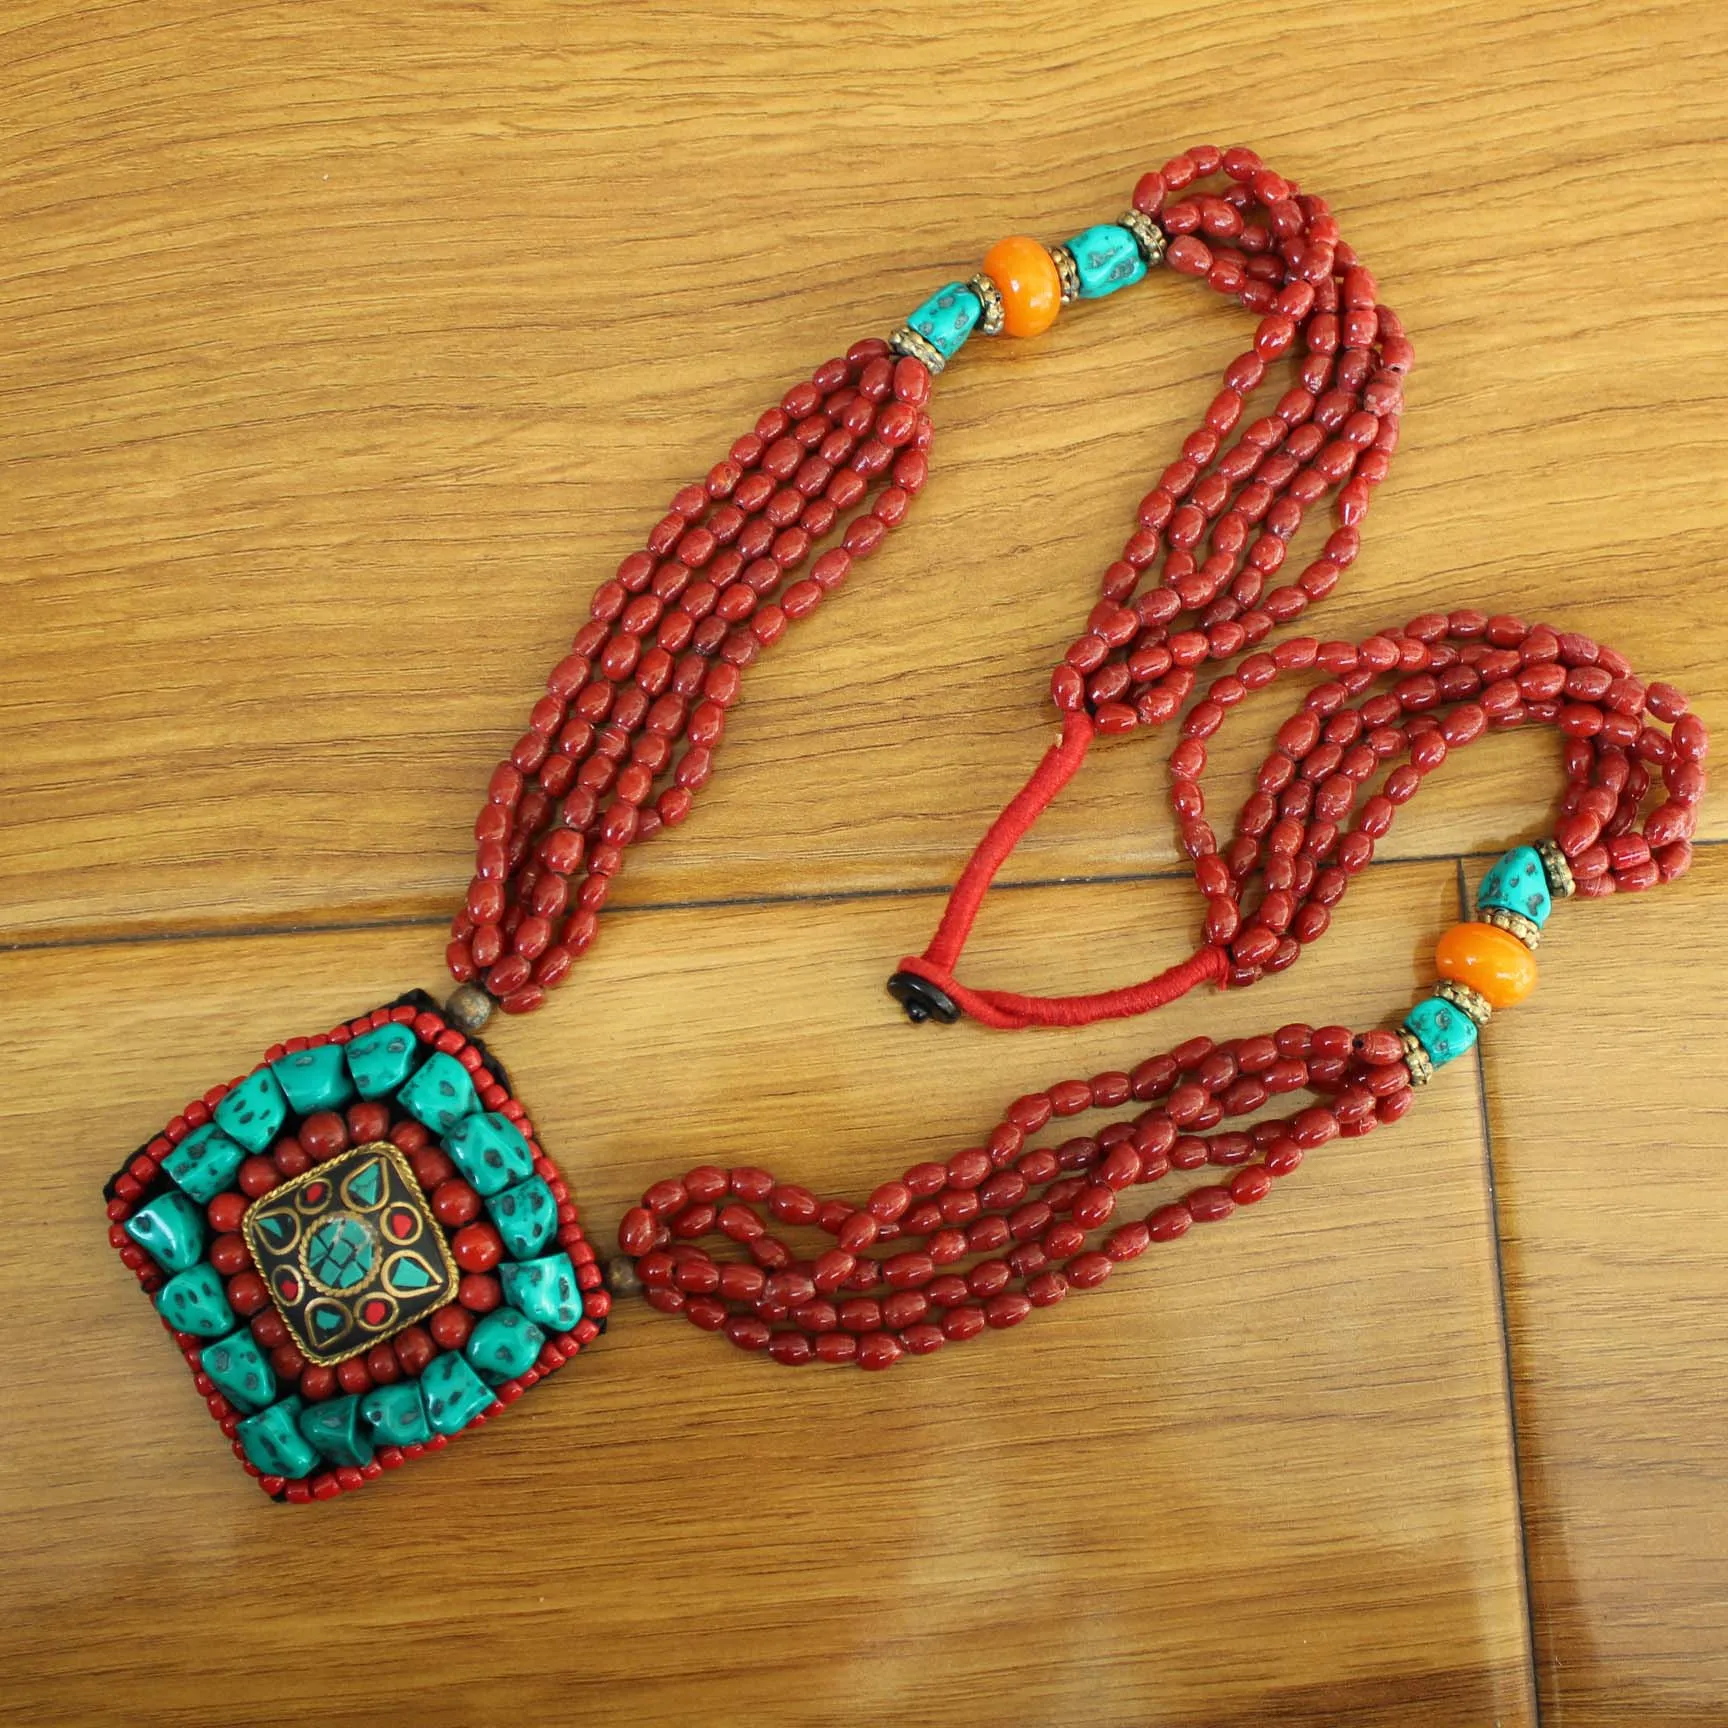 NK218 этнический Тибетский длинный цветок кулон ожерелье ручной работы бирюза бисерное ожерелье Богемия ювелирные изделия в непальском стиле